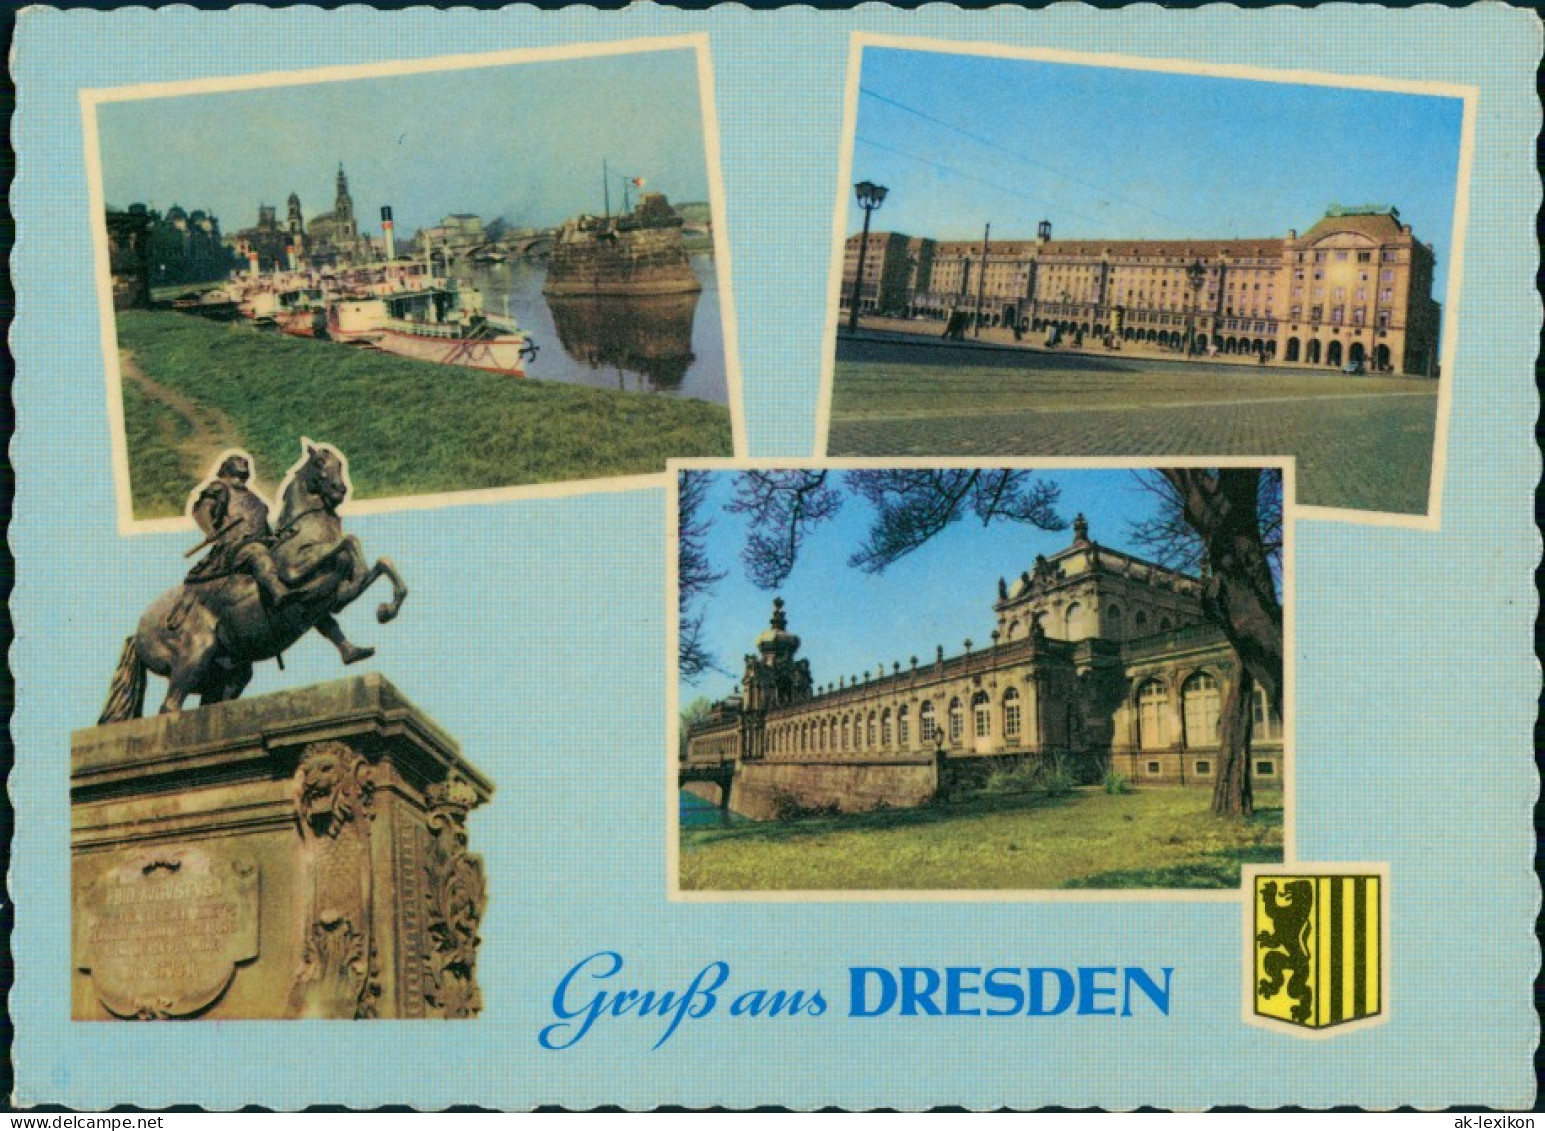 Ansichtskarte Dresden Dampferanlegestelle, Zwinger, Altmarkt 1959 - Dresden